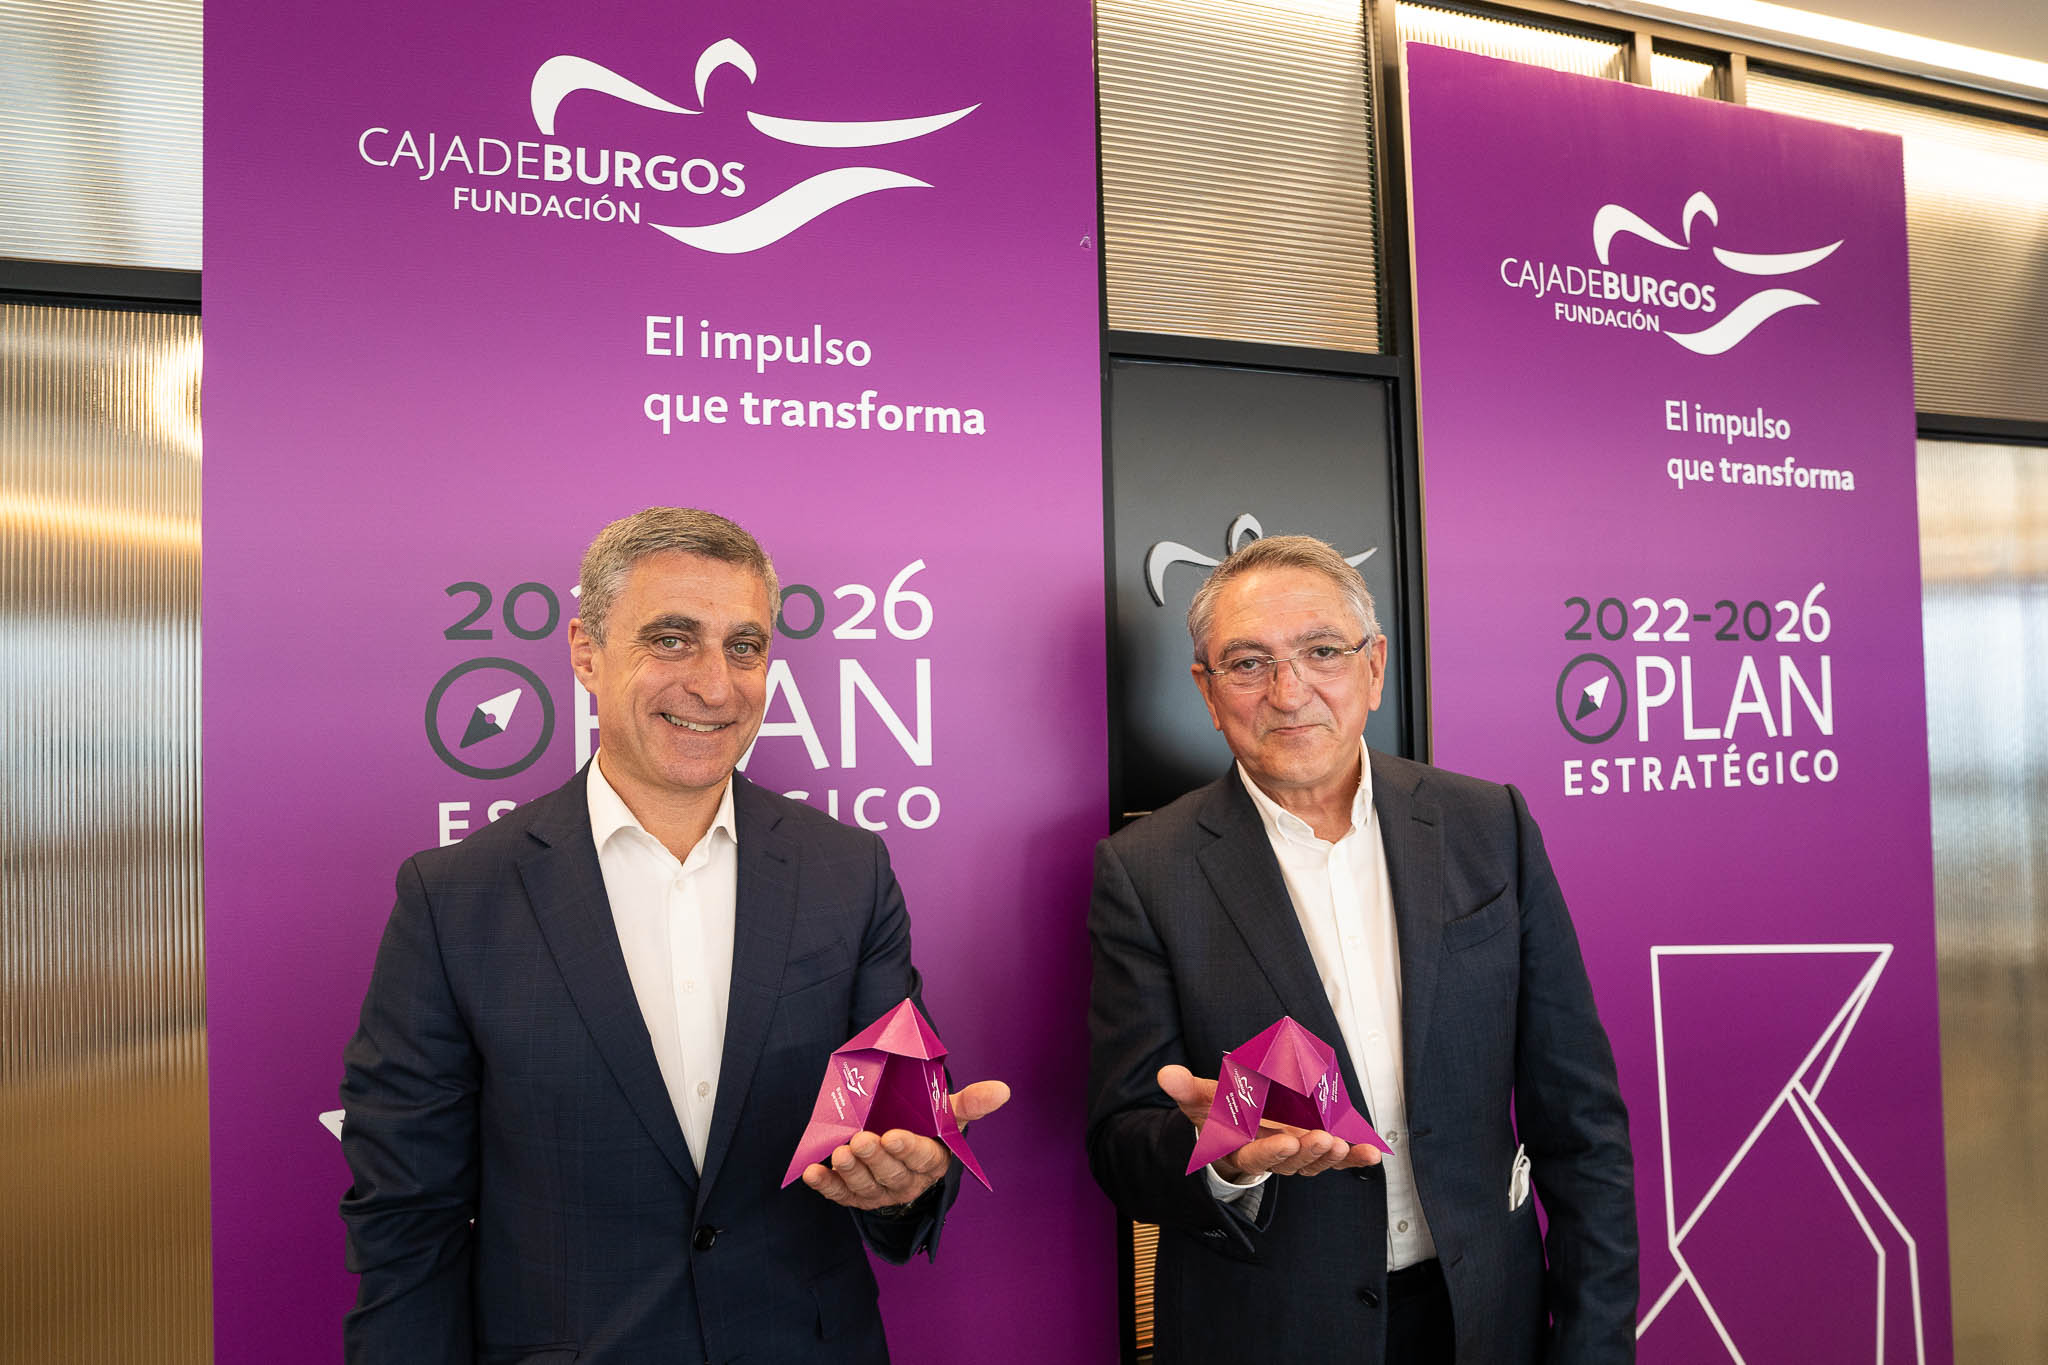 Ginés Clemente y Rafael Barbero momentos antes de la rueda de prensa sobre el plan estratégico de Fundación Caja de Burgos